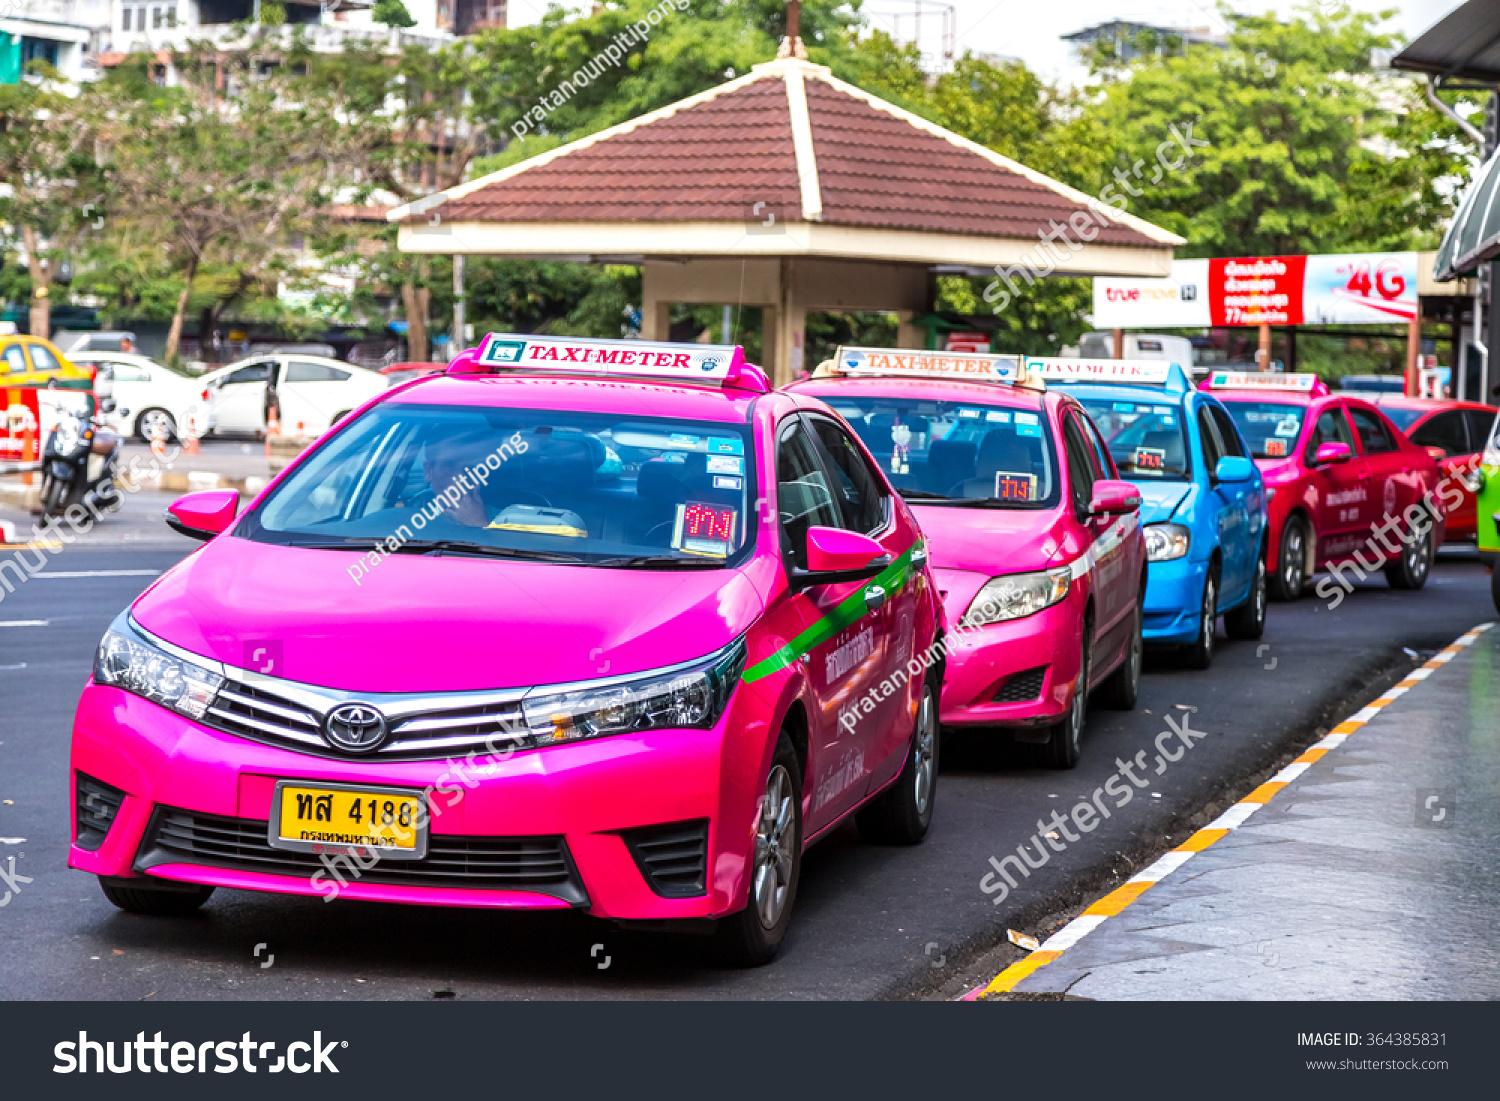 Такси тайцы. Такси Бангкок. Такси Таиланд. Тайское такси. Тайланд Бангкок такси.